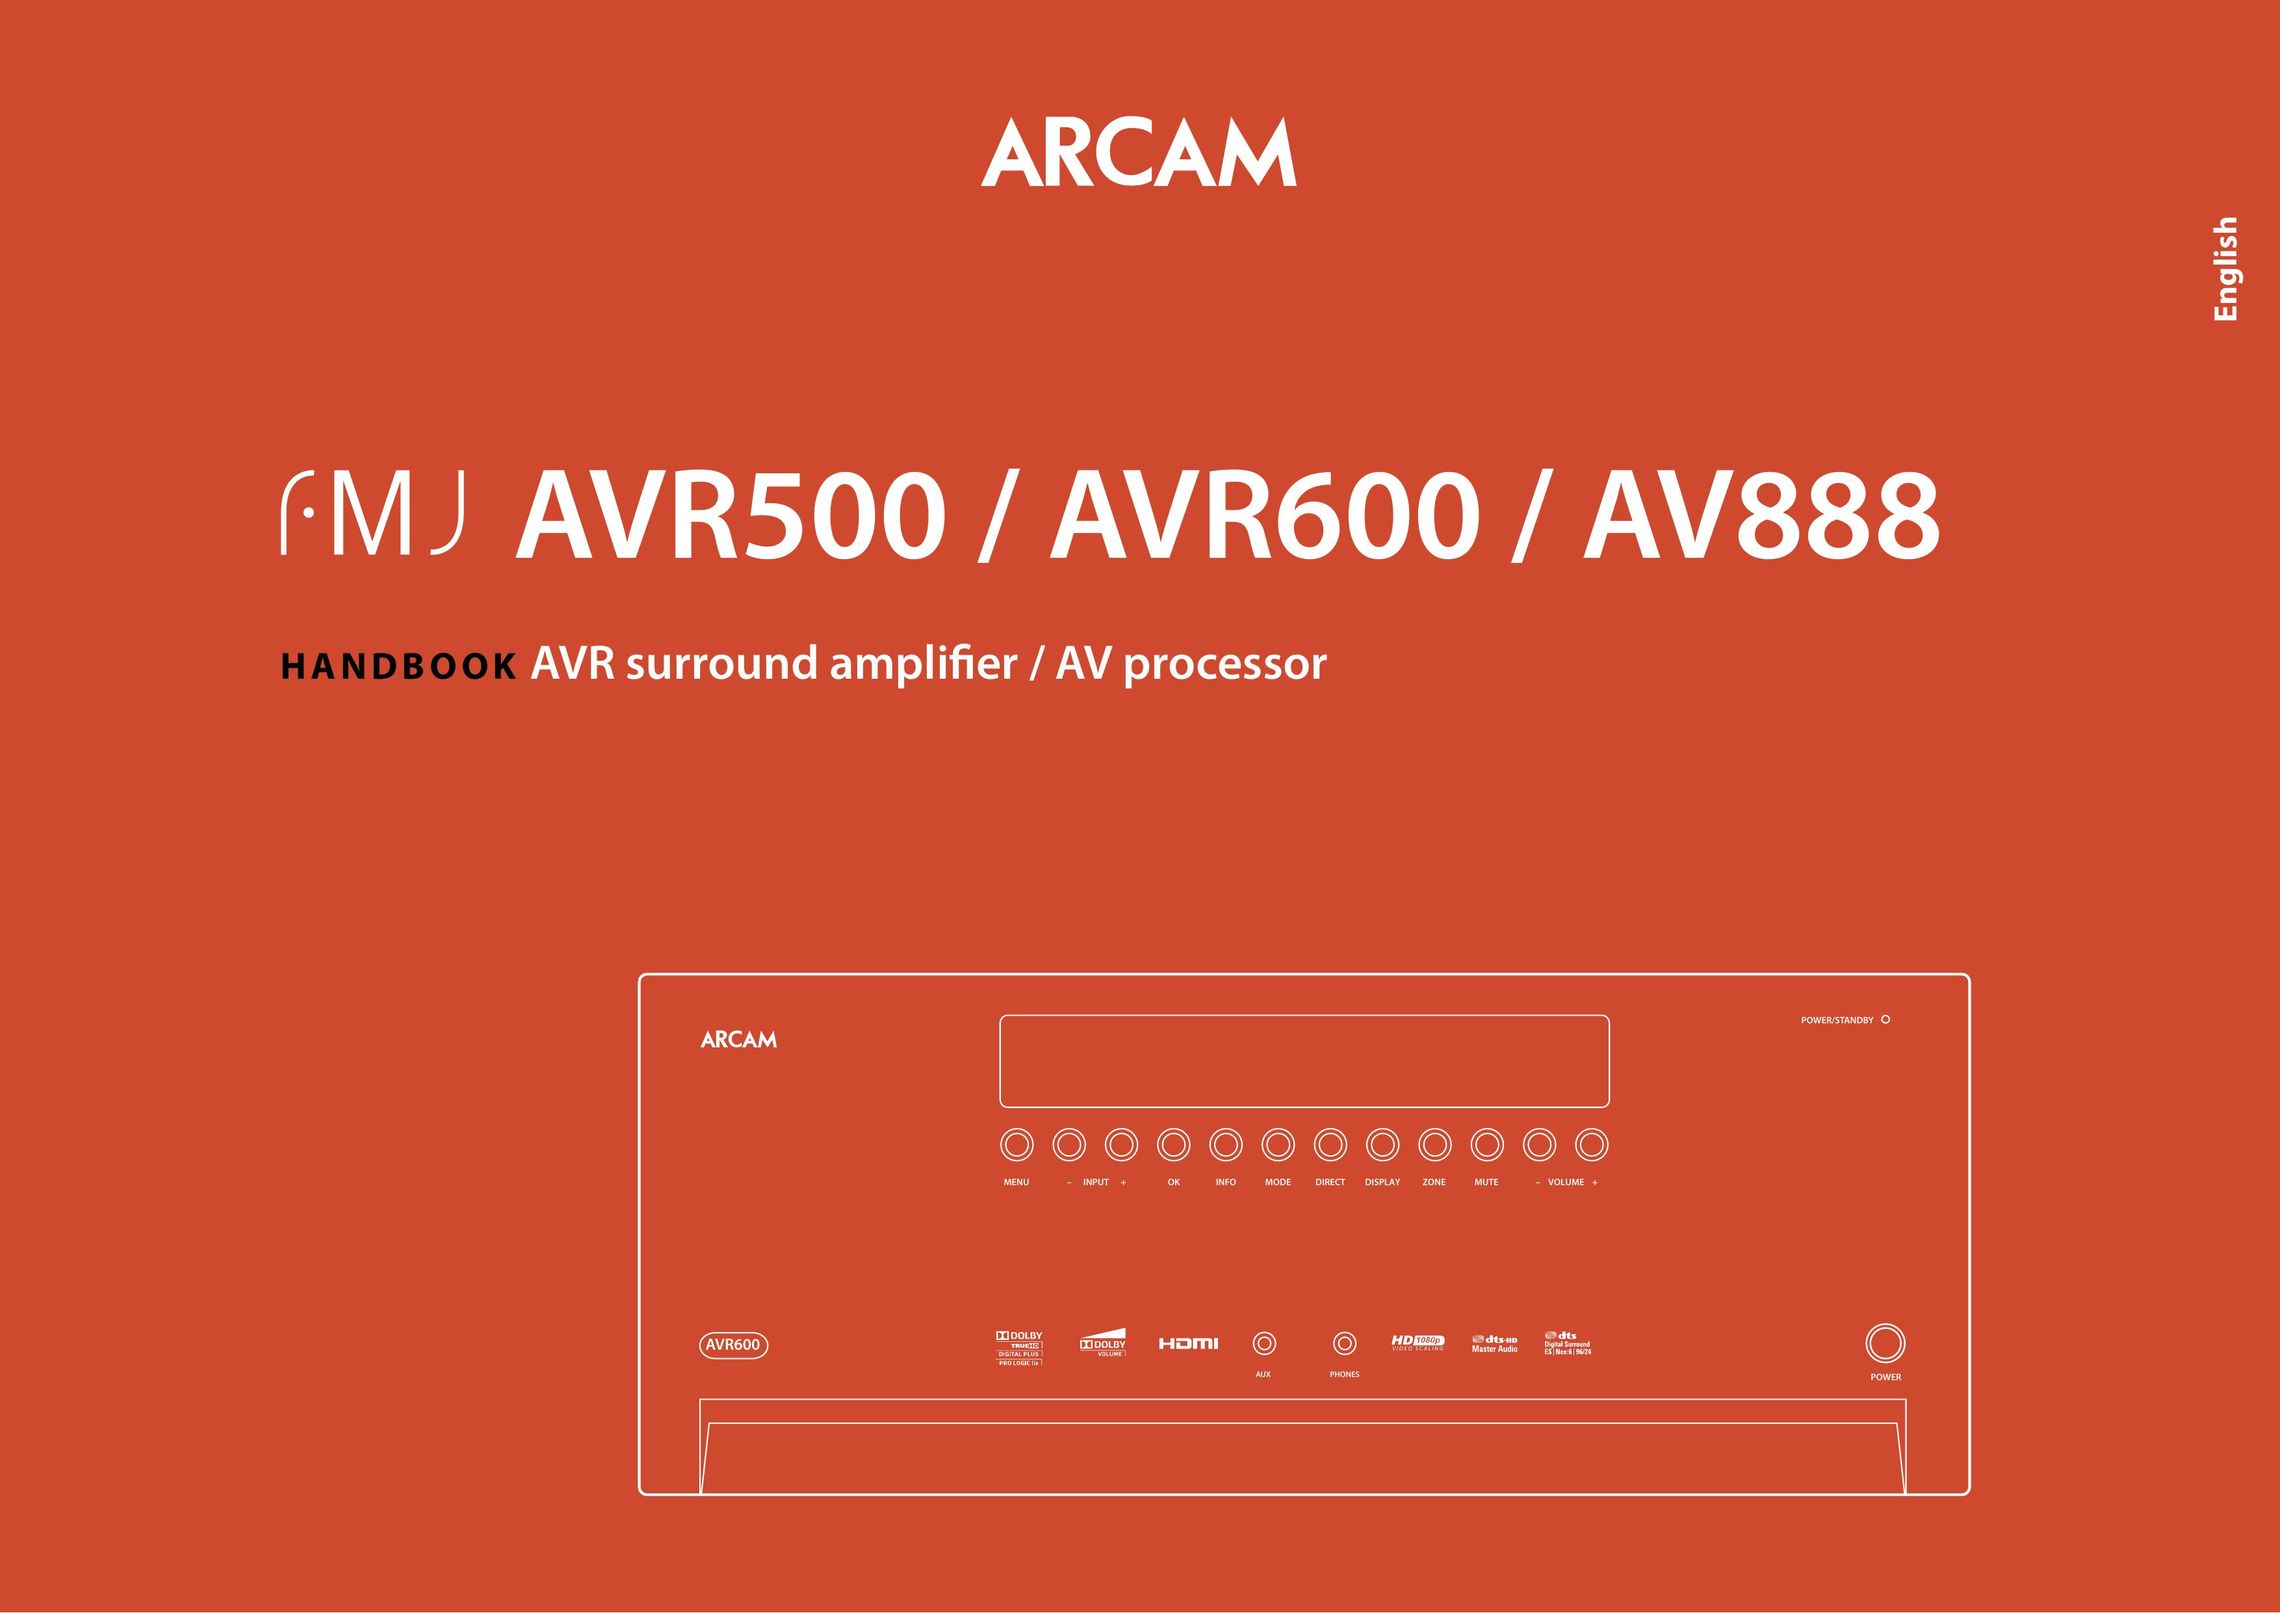 Arcam AV888 Home Theater System User Manual